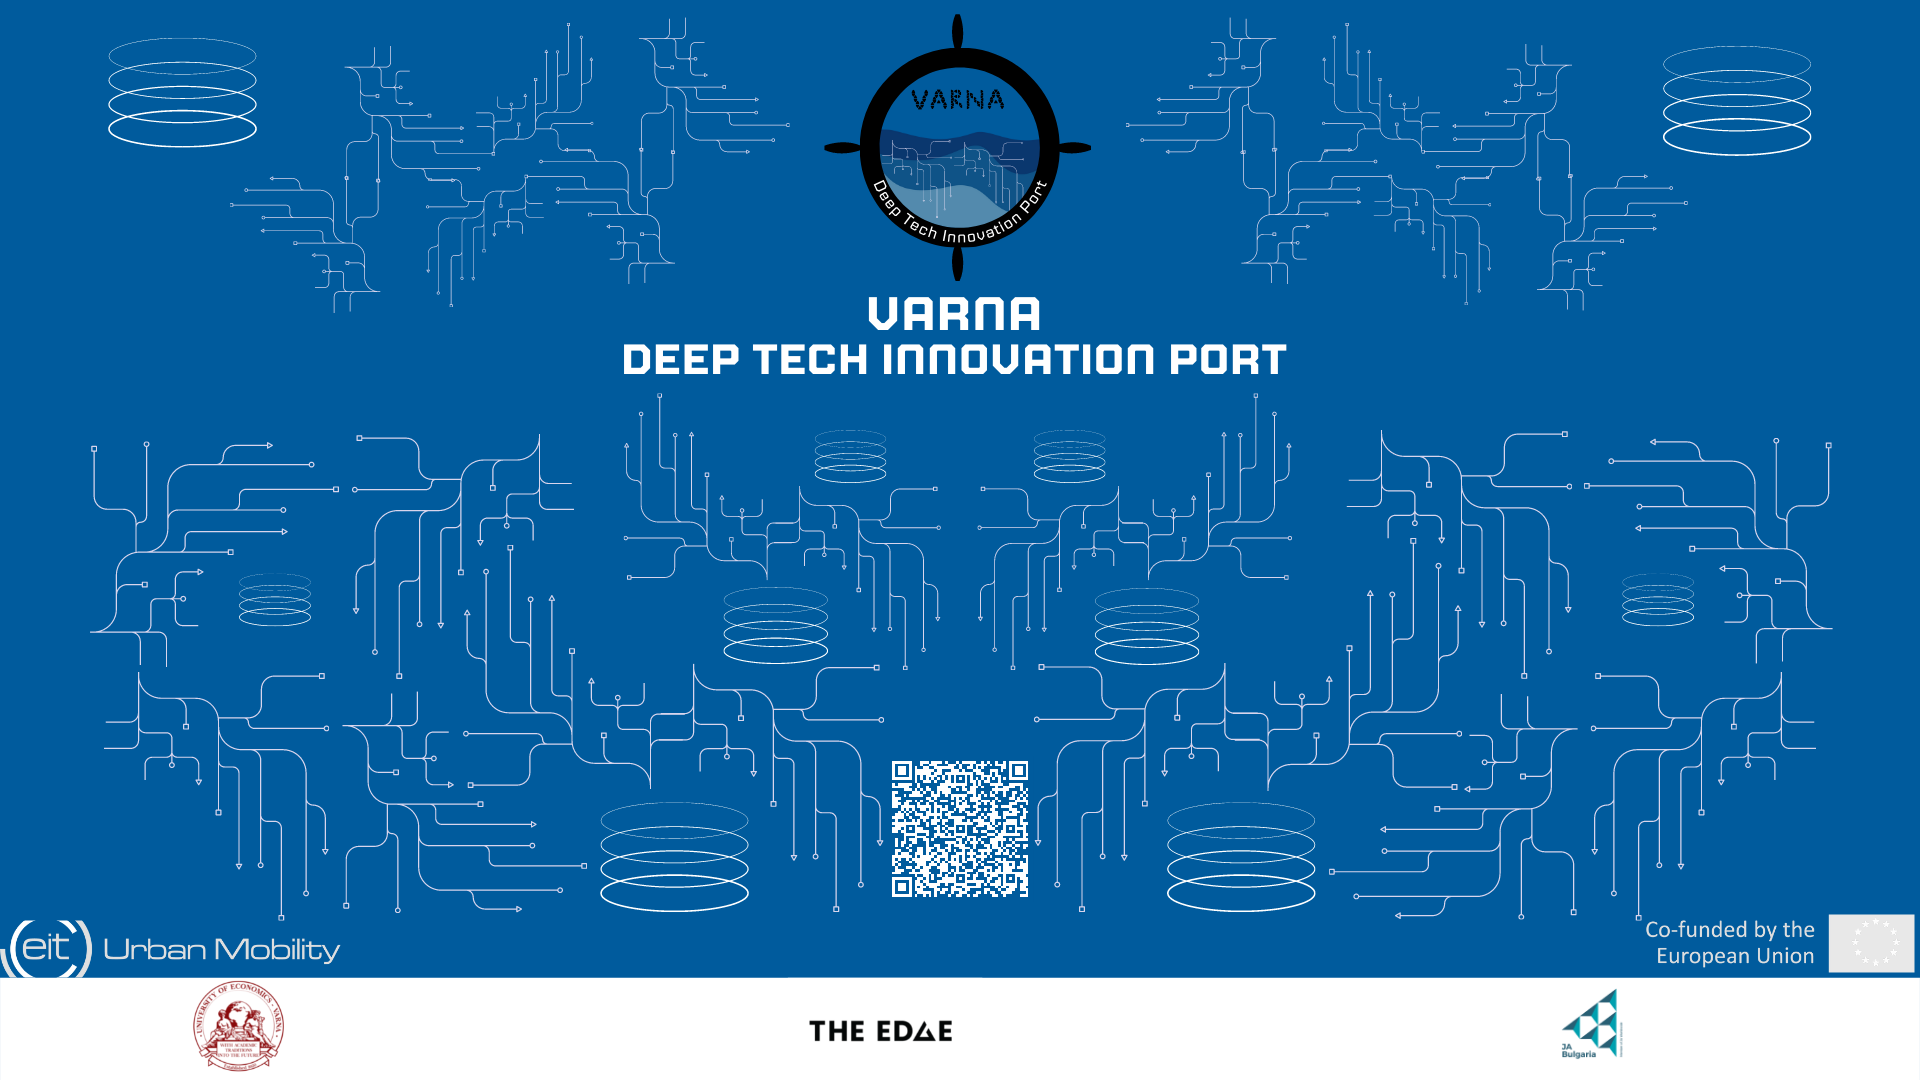 Откриване на „Дълбоко технологичен иновационен порт Варна”